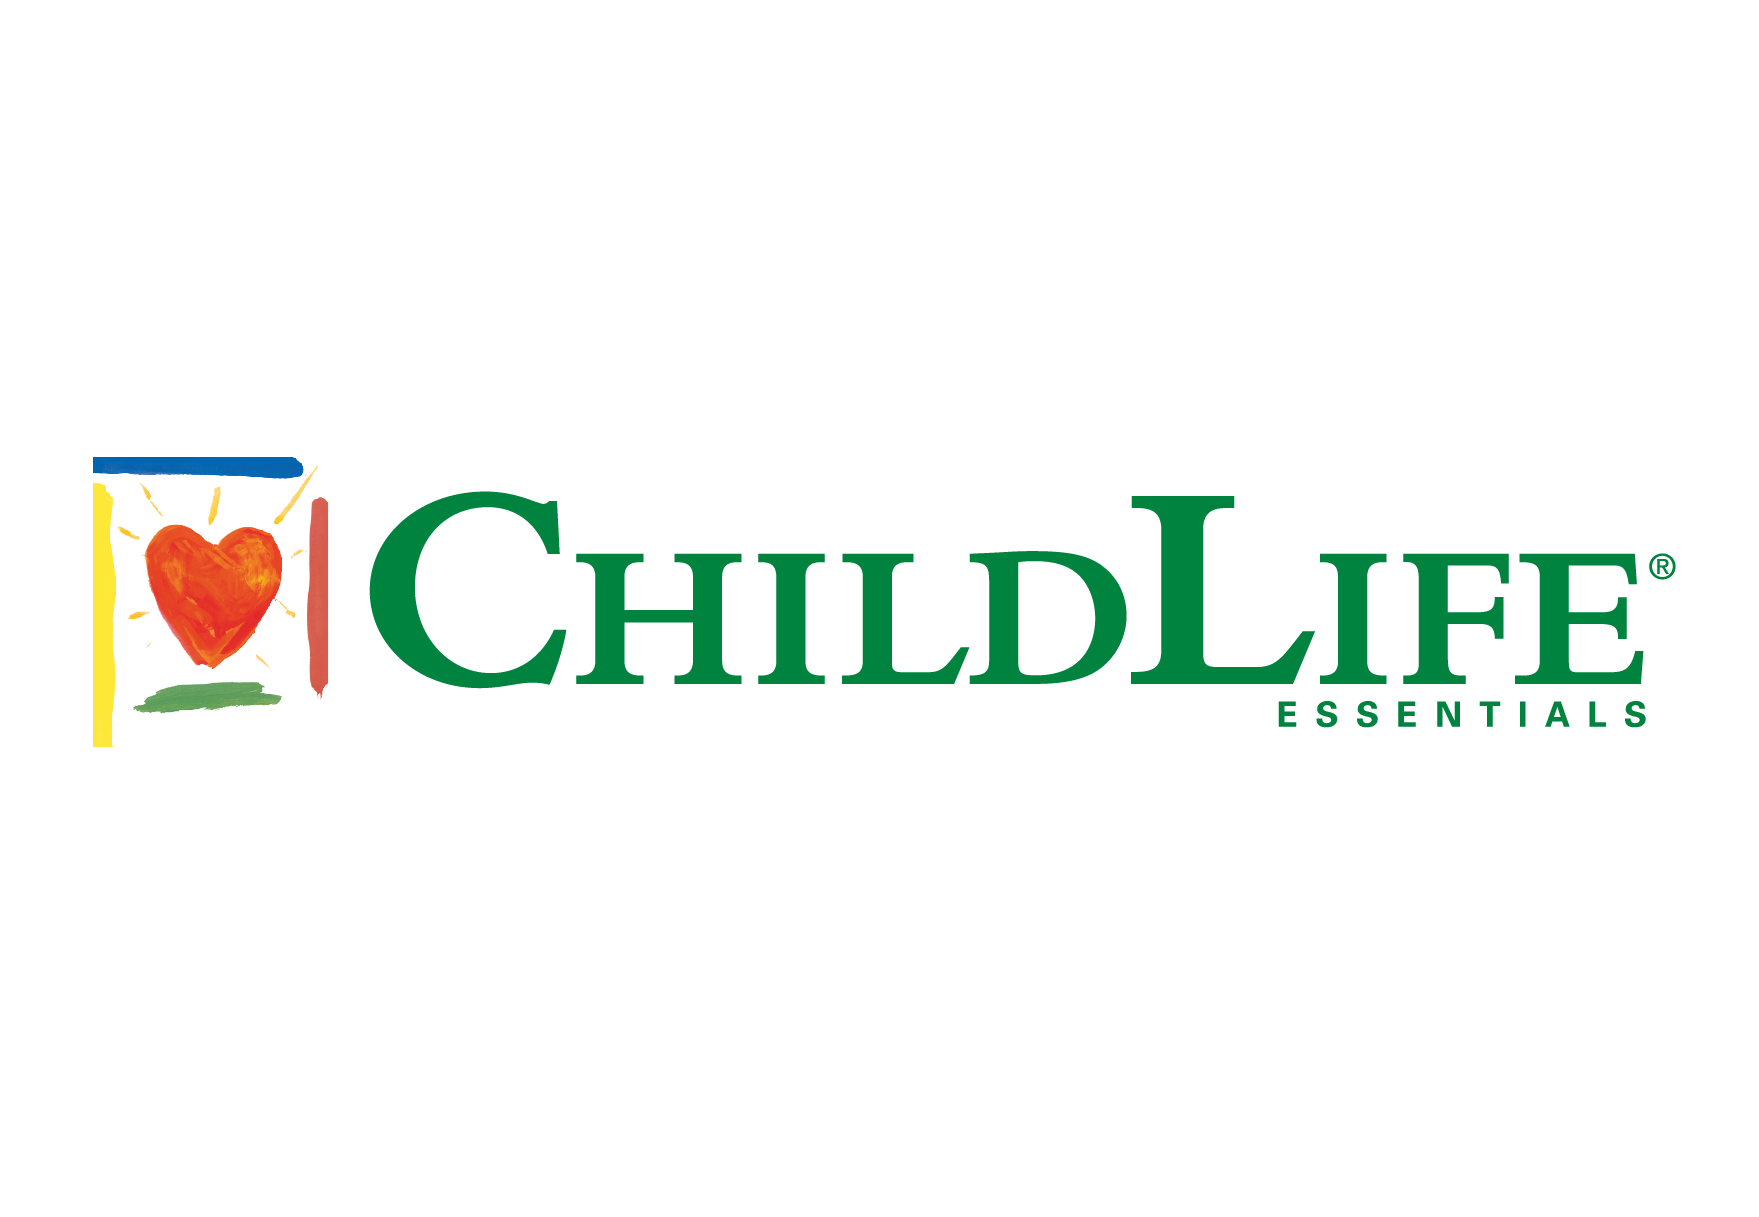 Childlife Essentials